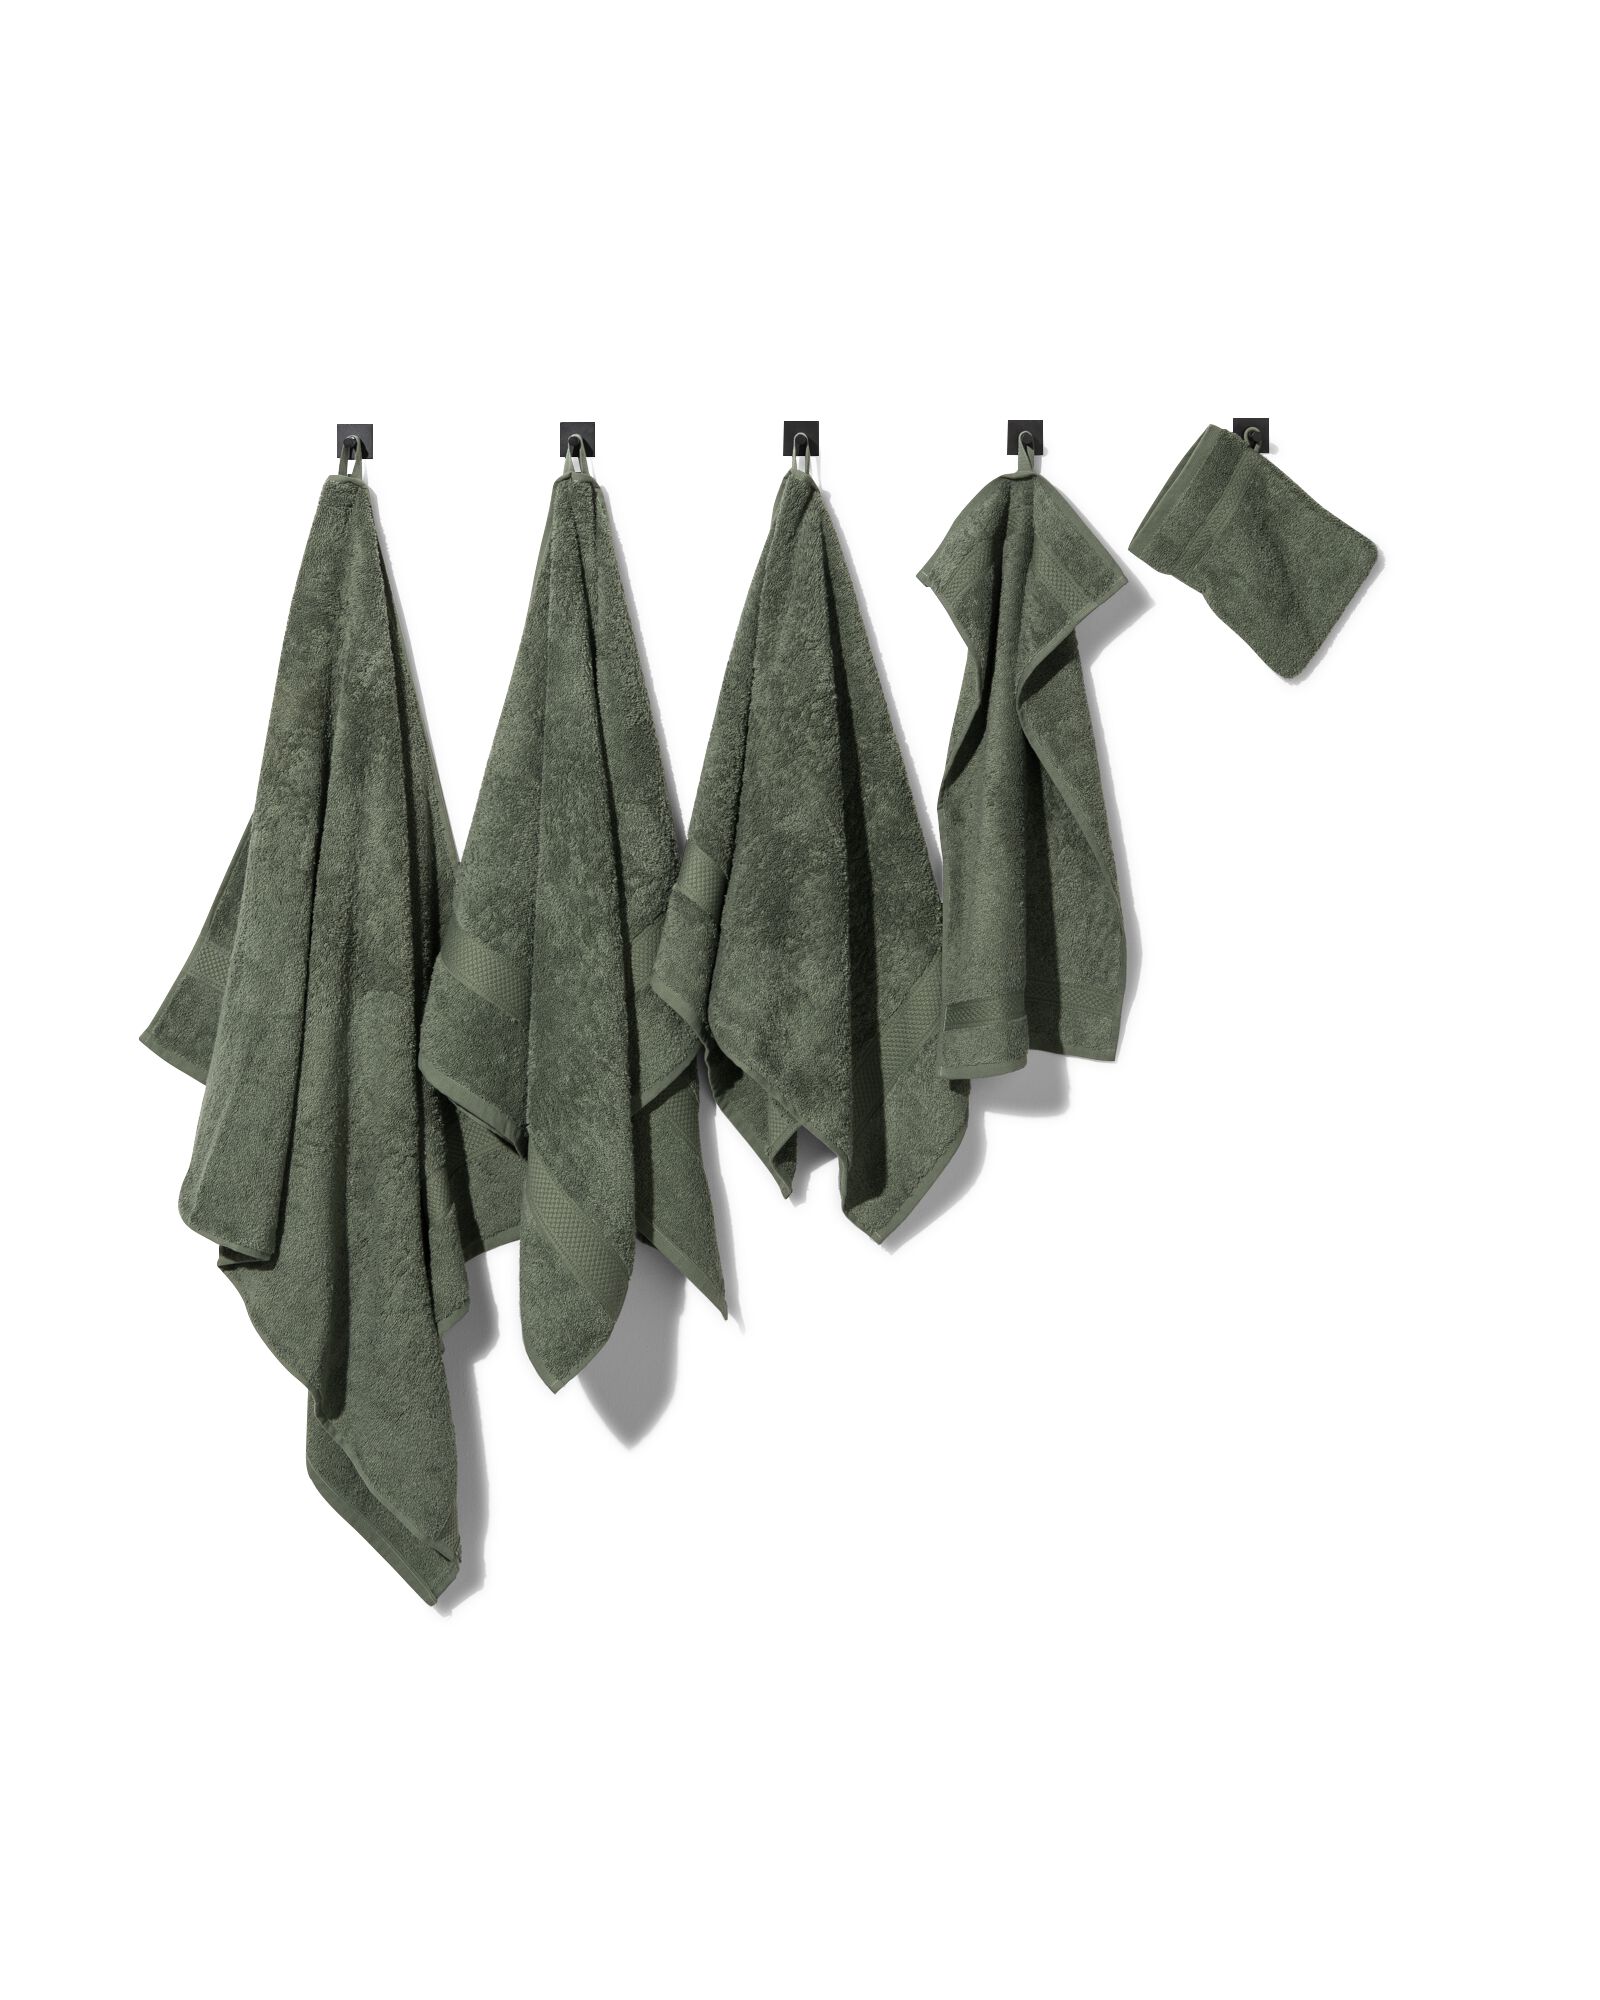 handdoek 70x140 zware kwaliteit - legergroen legergroen handdoek 70 x 140 - 5200704 - HEMA